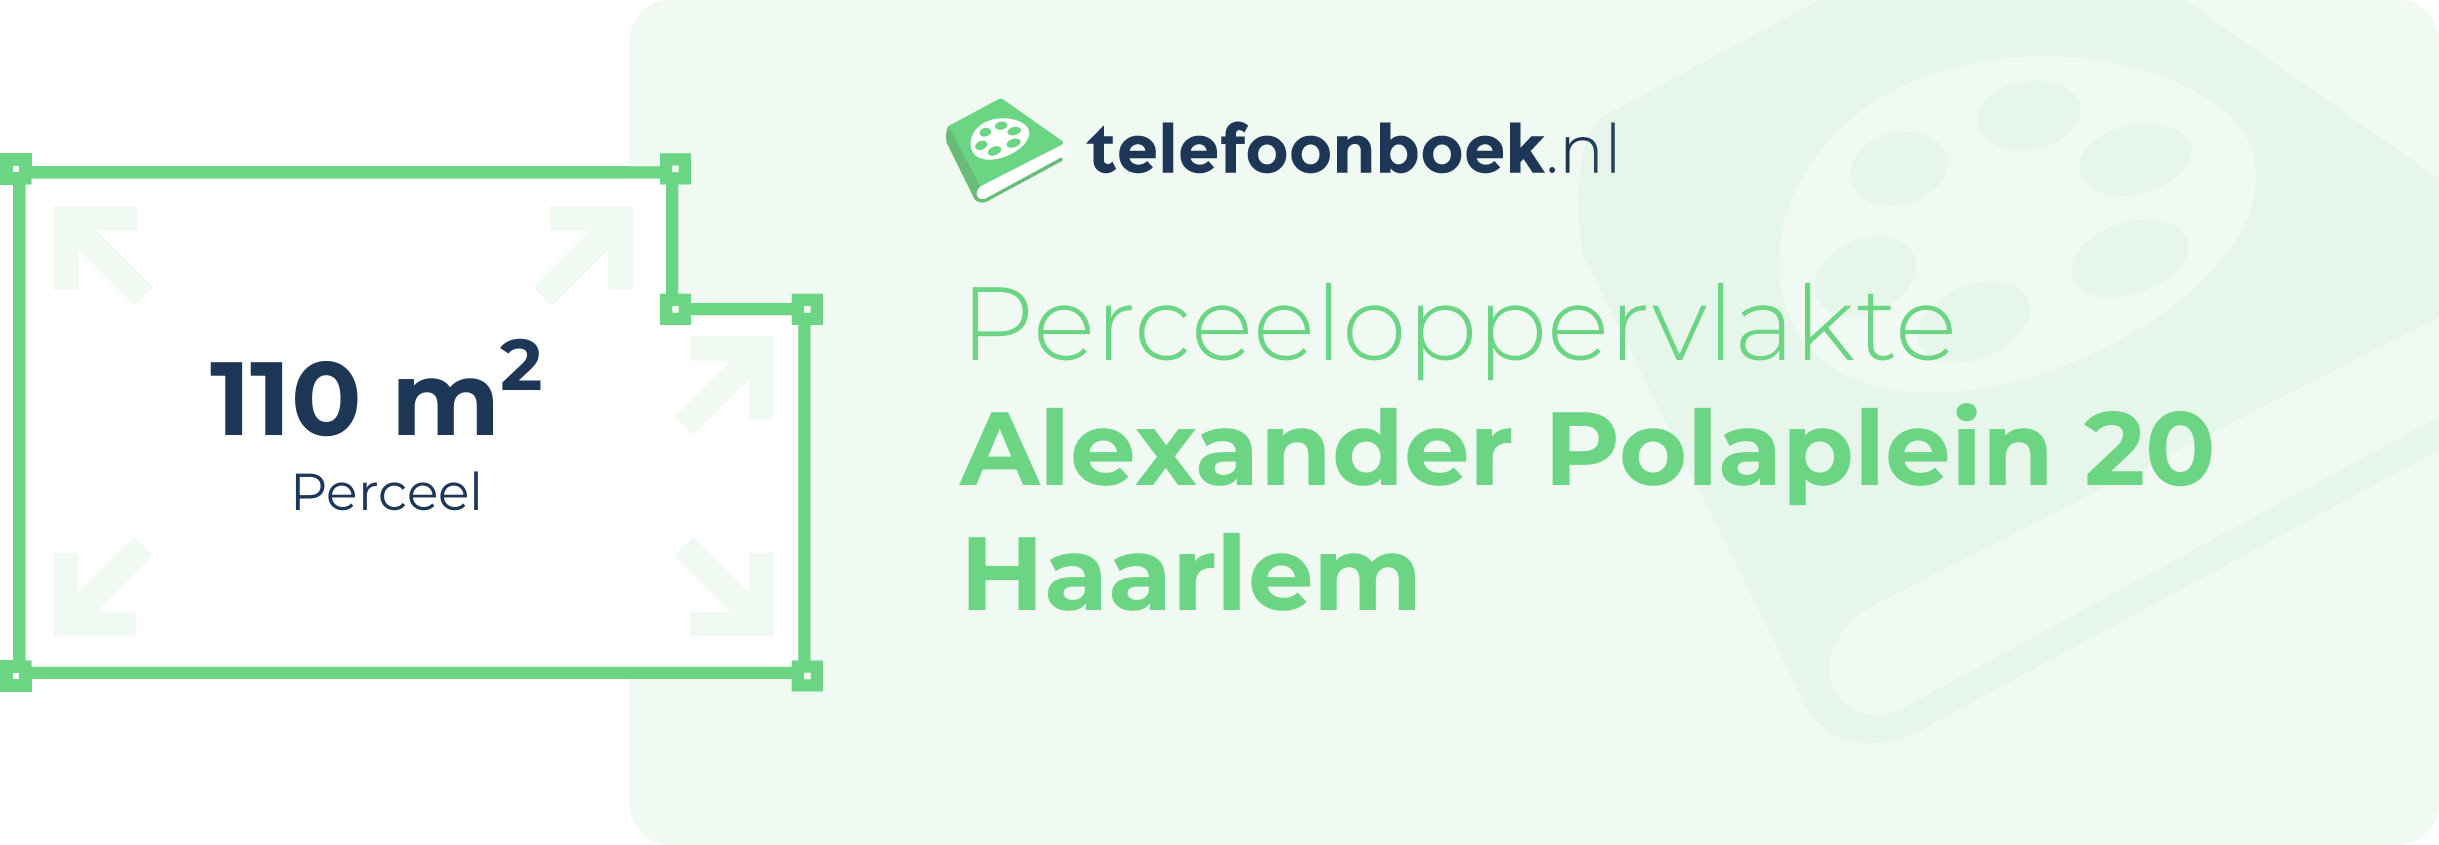 Perceeloppervlakte Alexander Polaplein 20 Haarlem